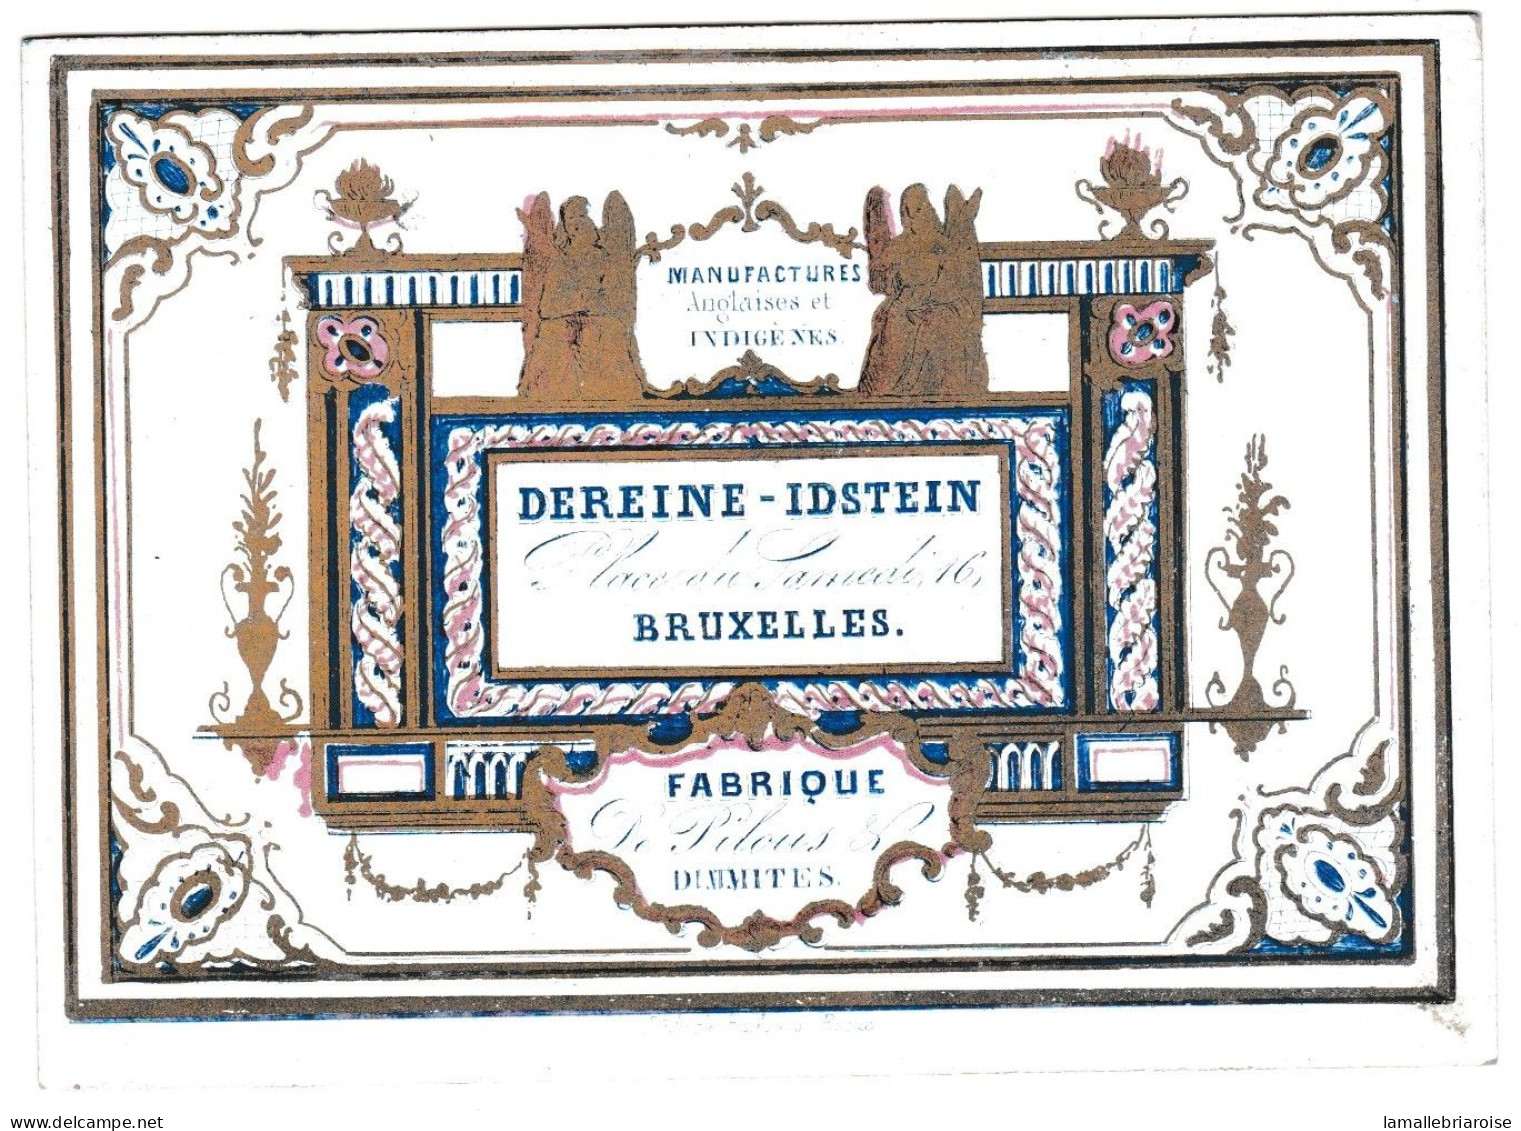 Belgique "Carte Porcelaine" Porseleinkaart, Dereine-Idstein, Fabrique De Pilous, Bruxelles, Dim:112 X 80mm - Cartoline Porcellana